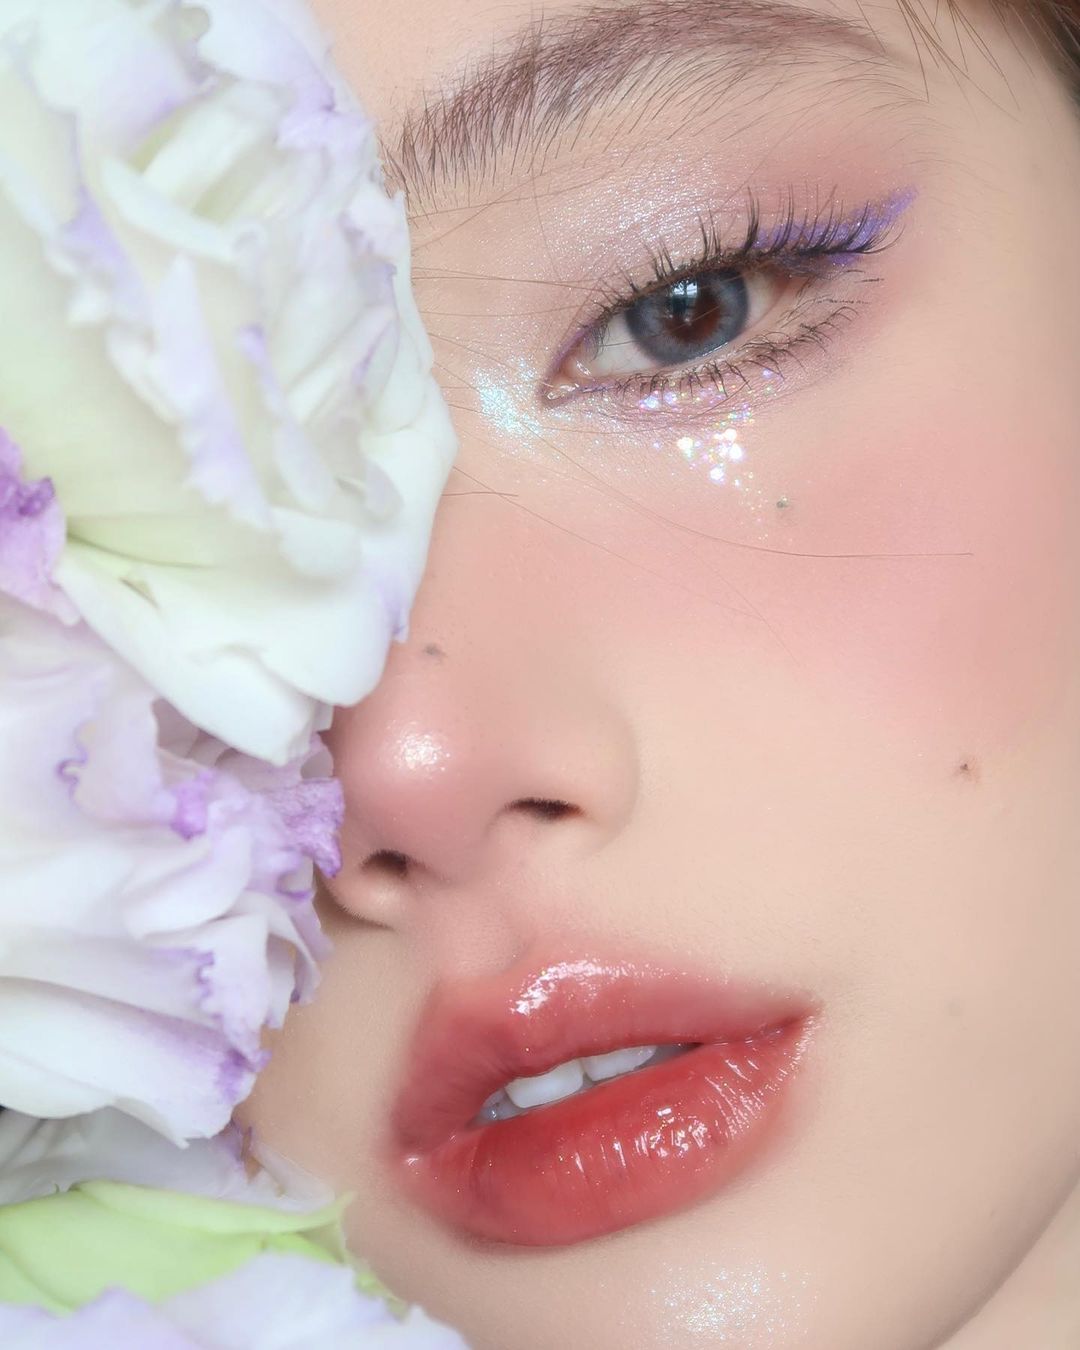 jellybean_xxdd C-beauty makeup